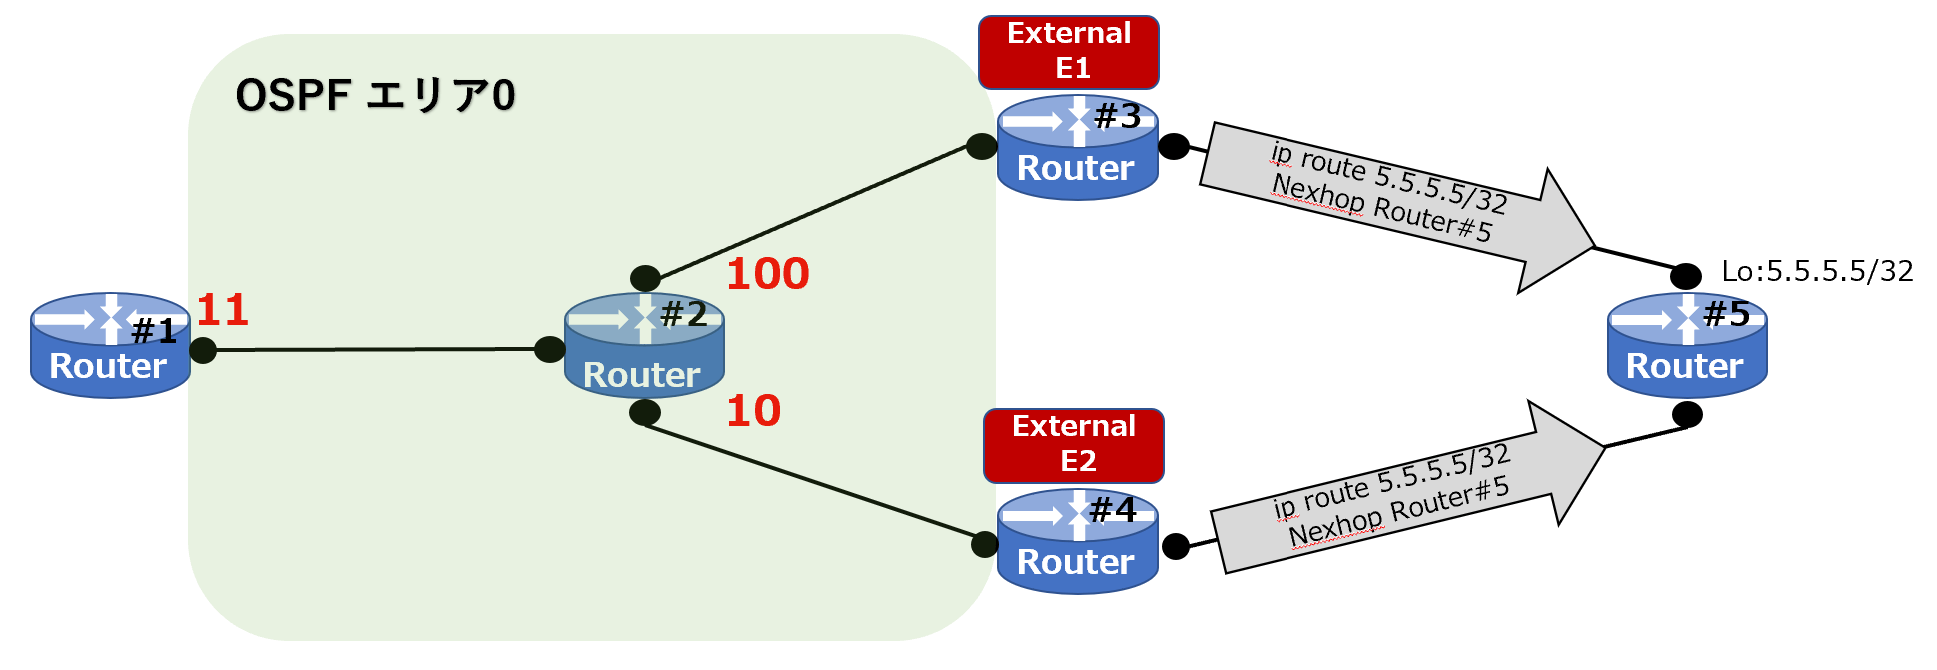 OSPF-E1&E2#1